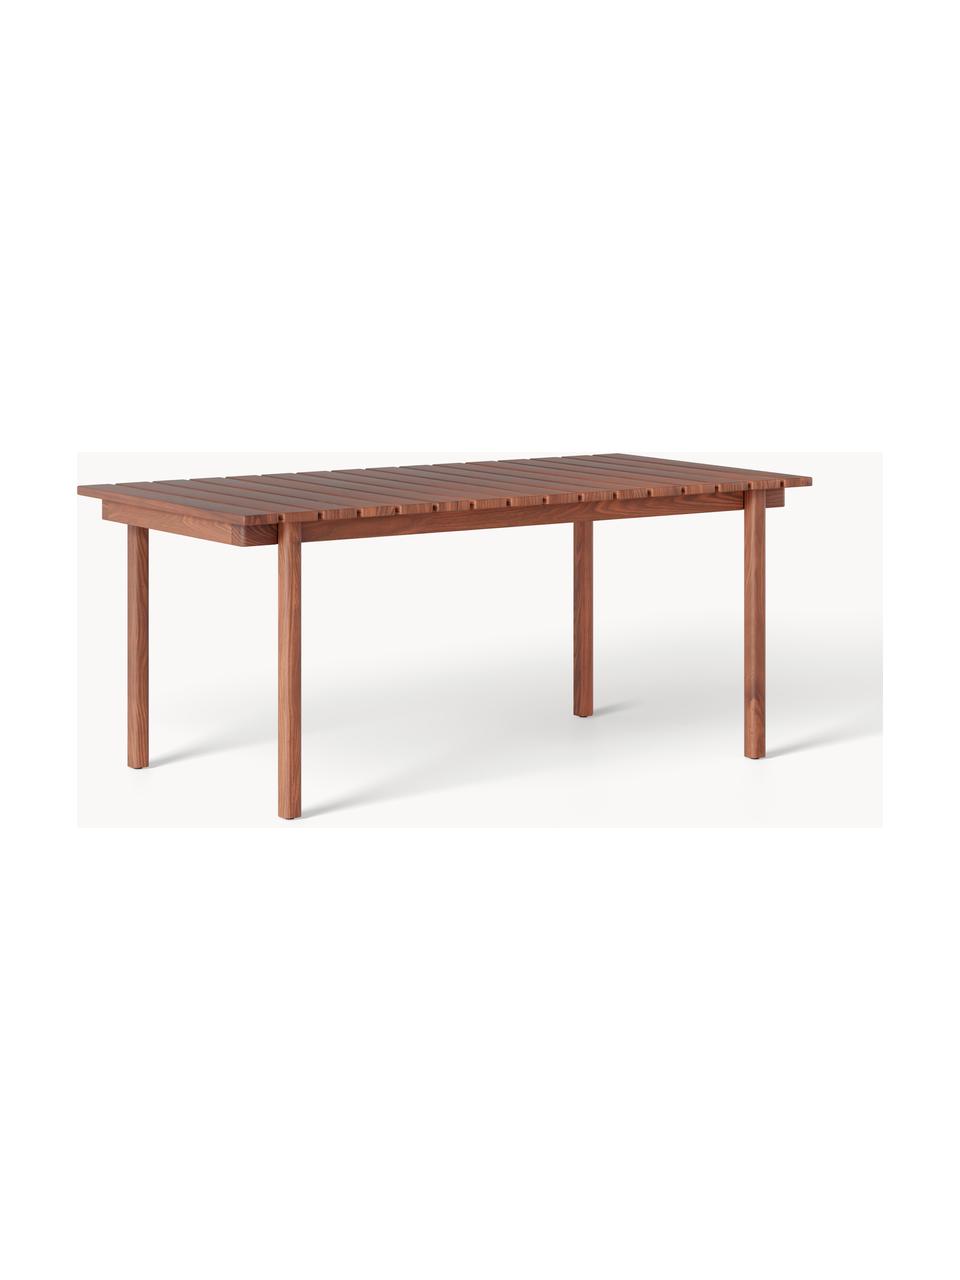 Zahradní stůl Matheus, 180 x 90 cm, Masivní akáciové dřevo, kov

Tento produkt je vyroben z udržitelných zdrojů dřeva s certifikací FSC®., Tmavé dřevo, Š 180 cm, V 90 cm